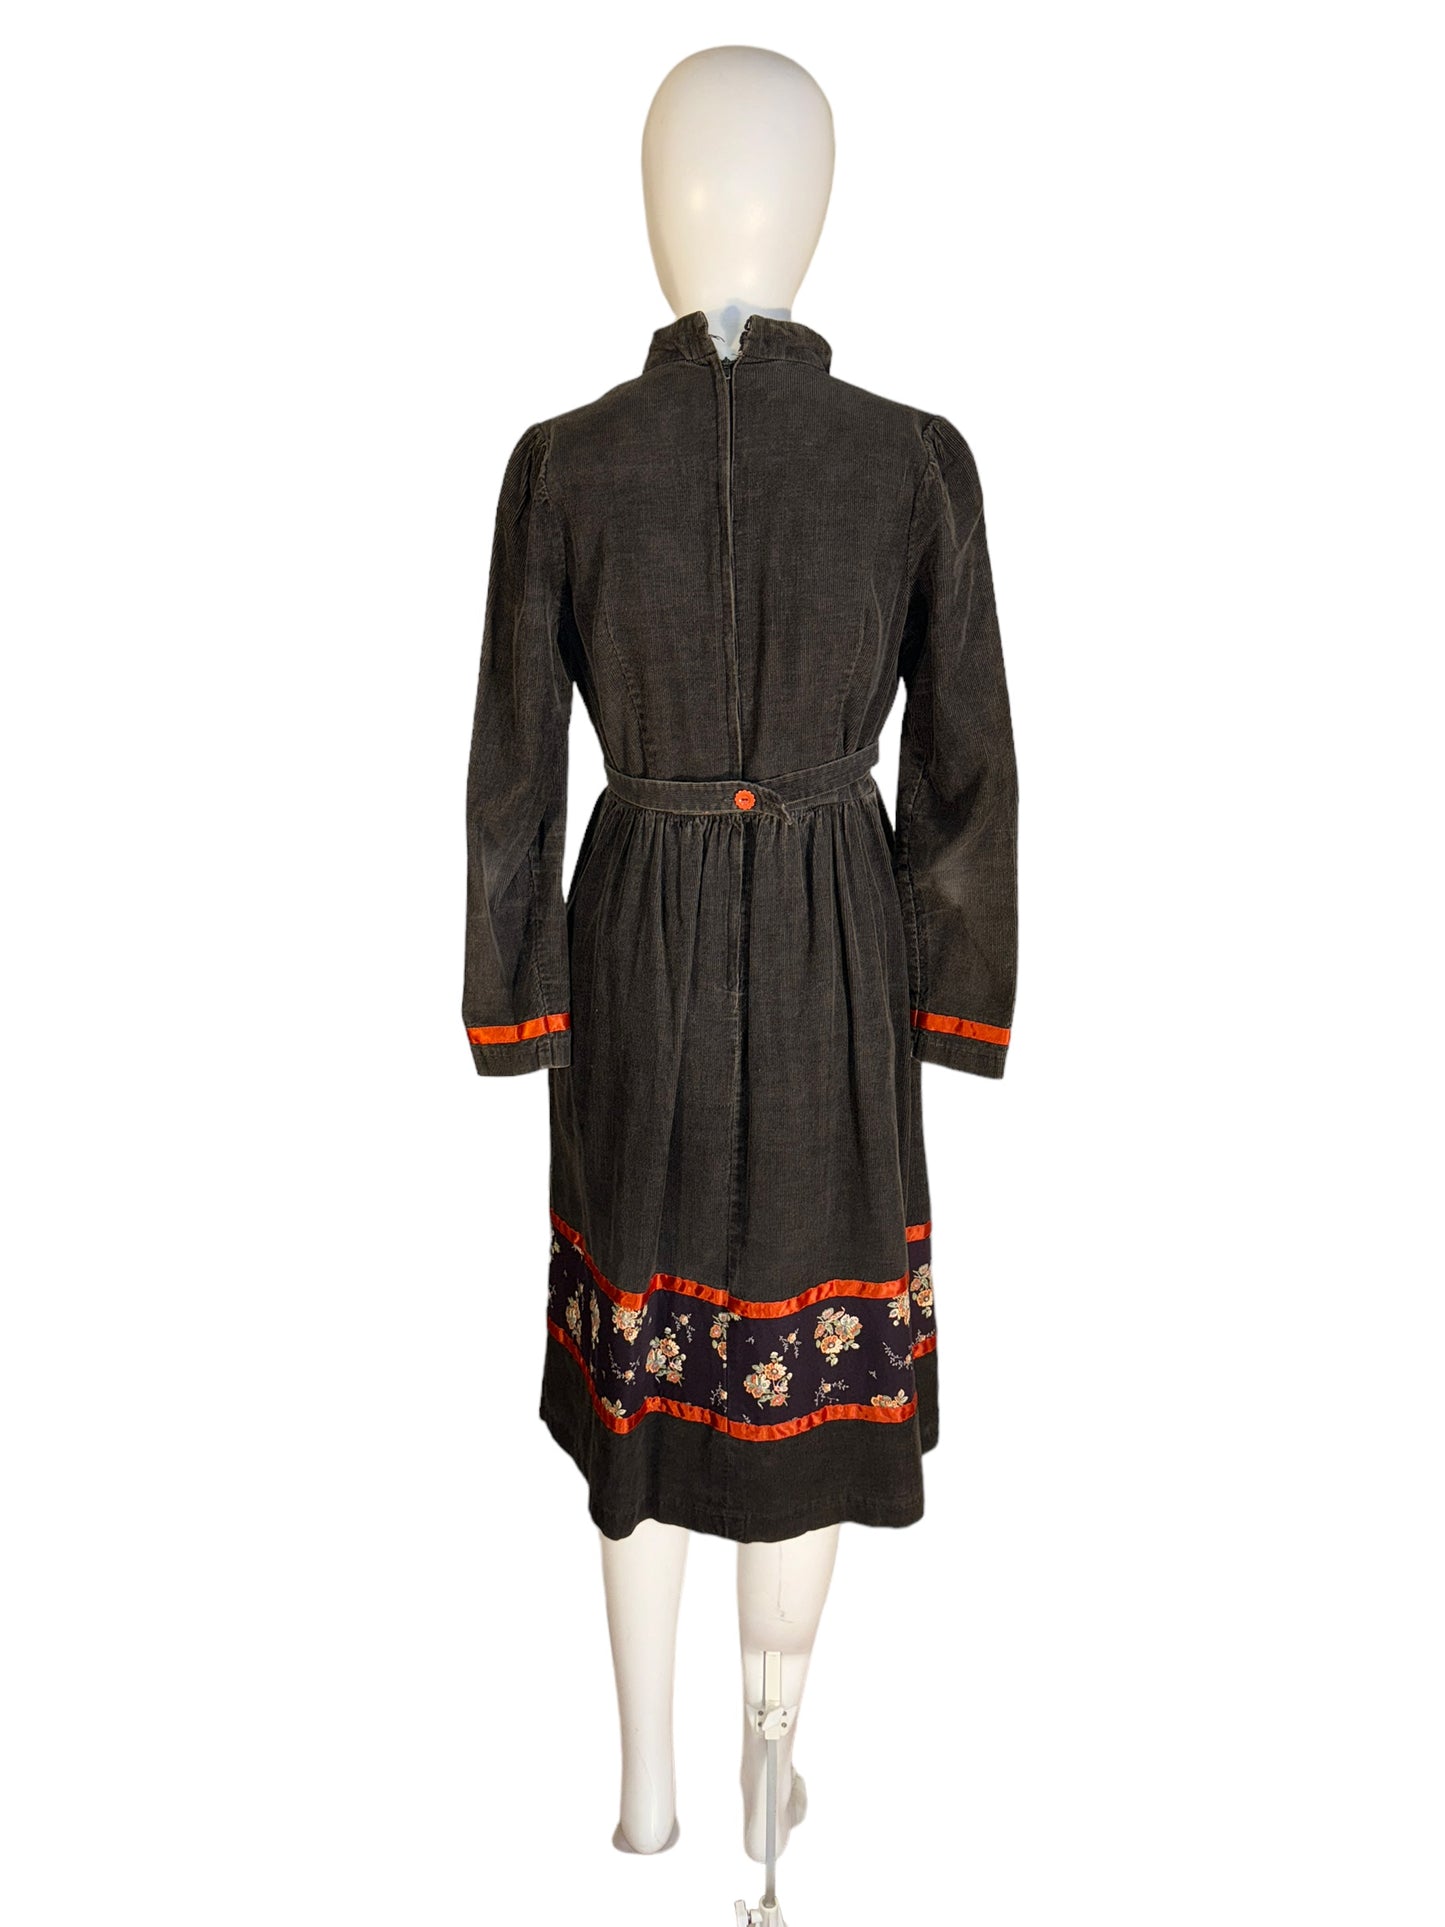 Vintage Hippie Dress by Trivia Corduroy Dress Midi Deep V 1970s